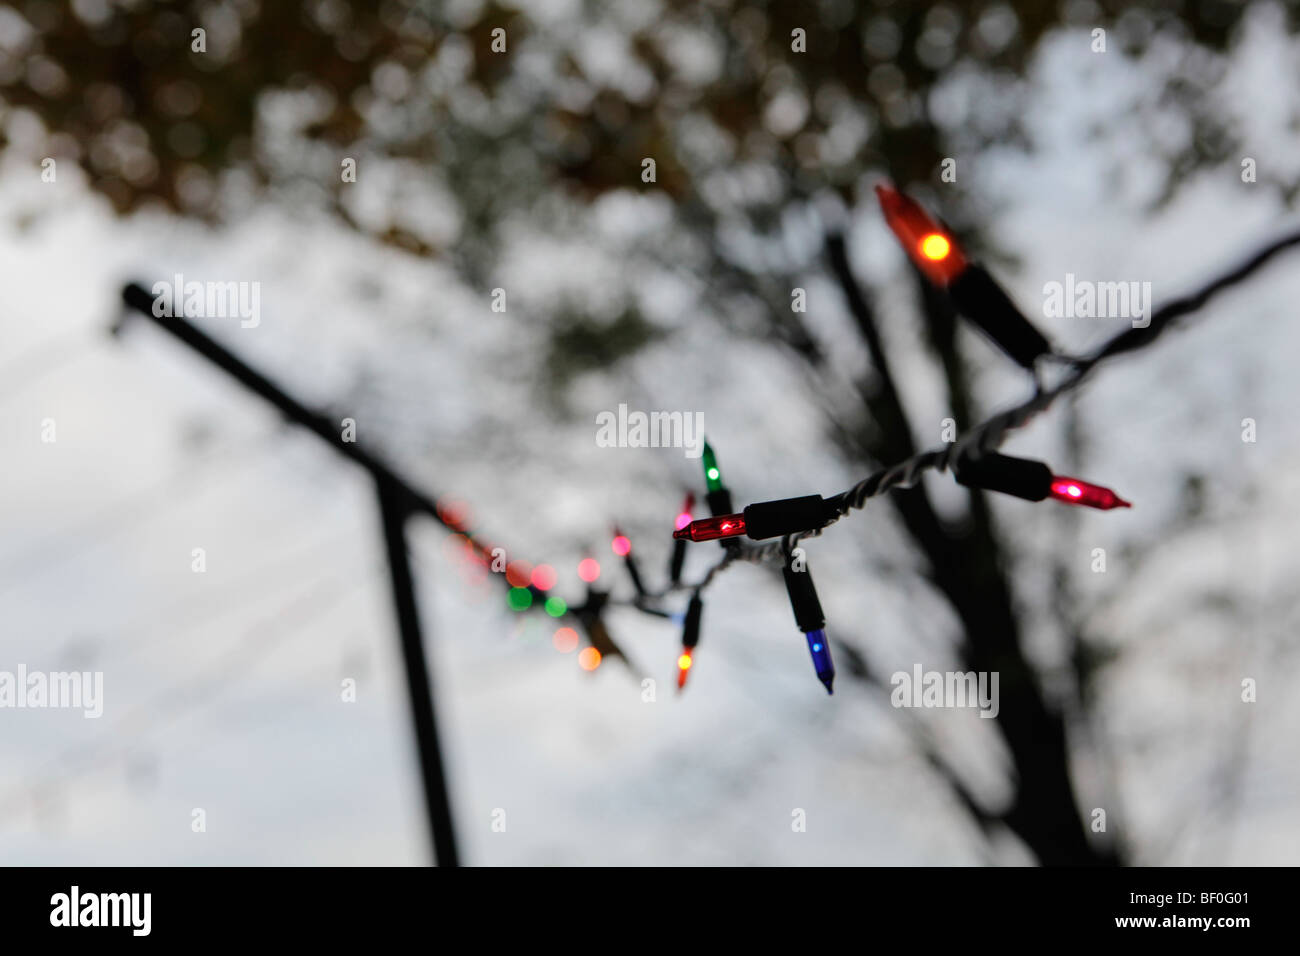 Bunte Weihnachtsbeleuchtung sind während einer Party in einer ländlichen Gegend der zentralen Vereinigten Staaten auf einer Wäscheleine aufgehängt. Stockfoto